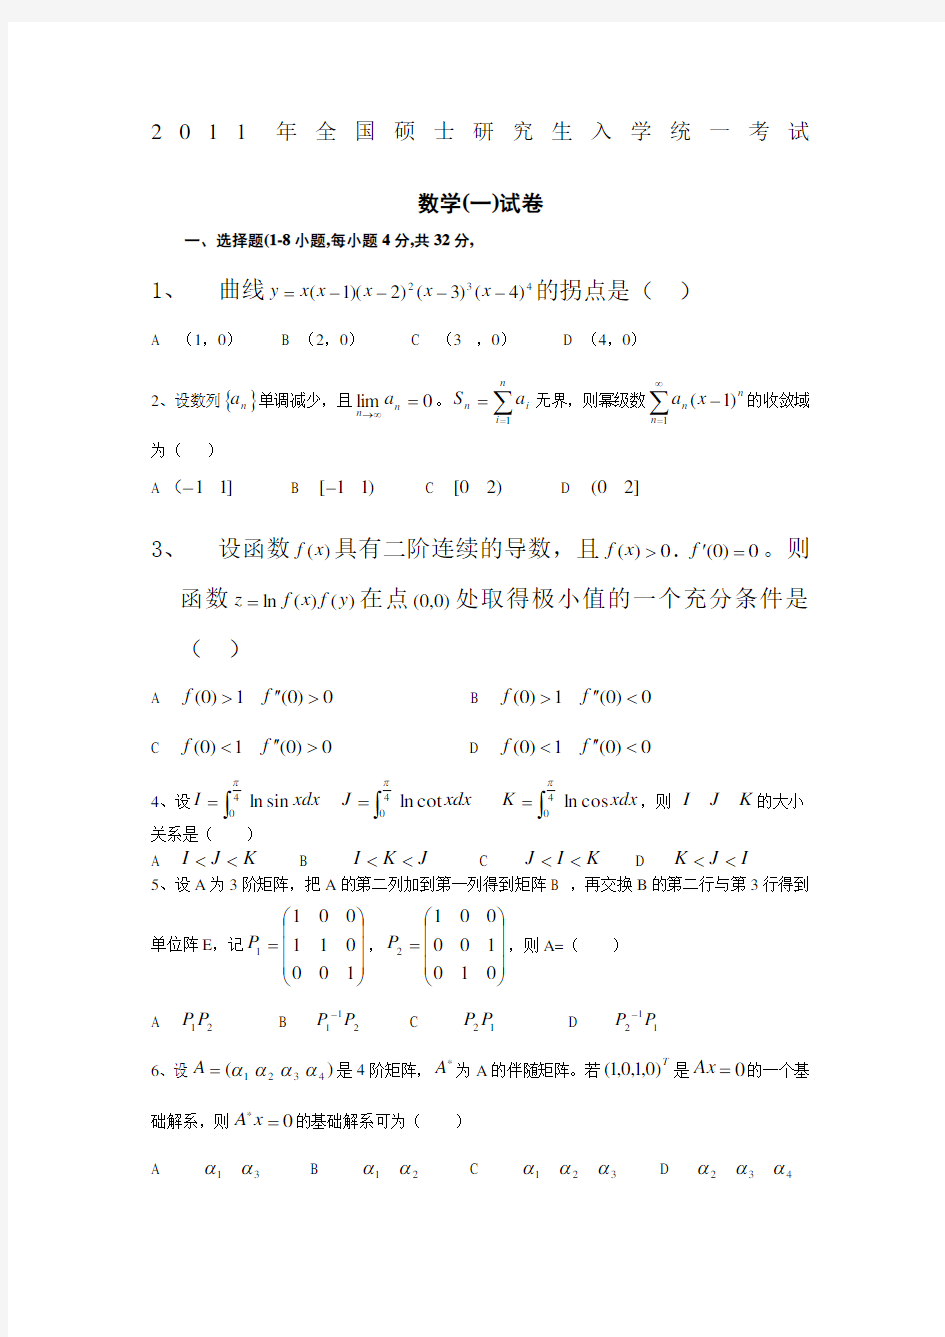 2011年考研数学一真题完整打印版